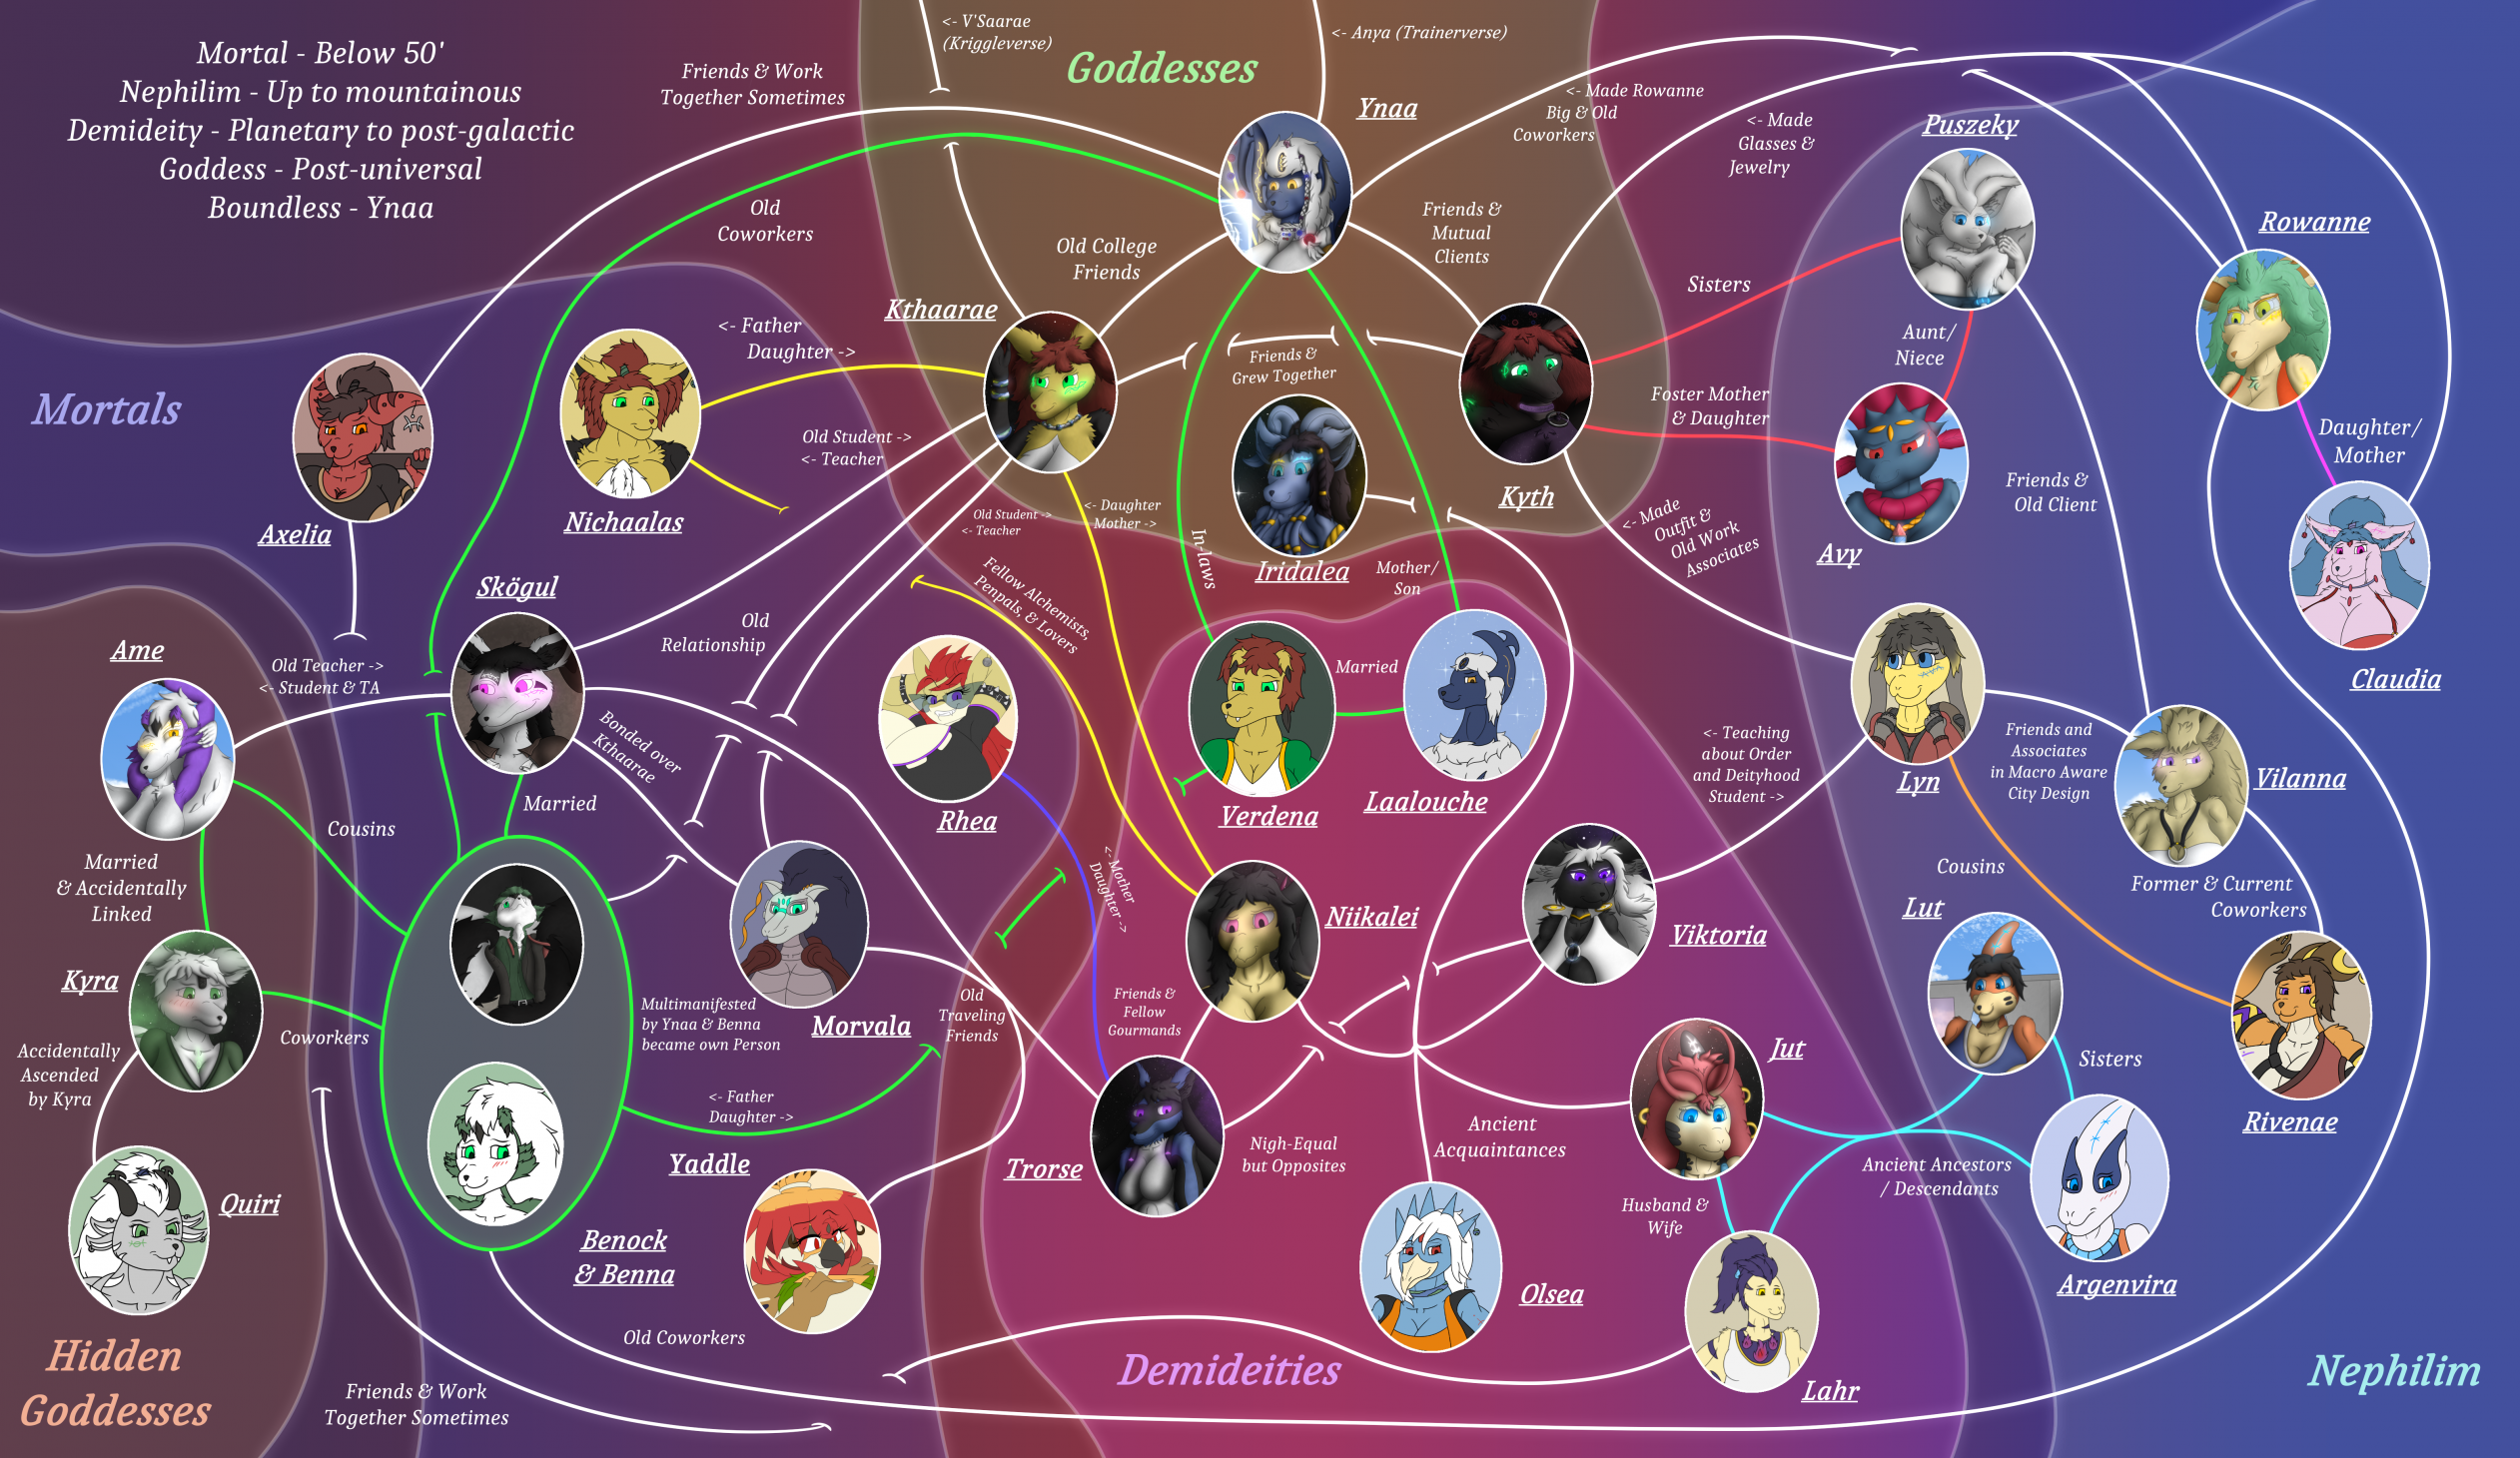 naruto family tree